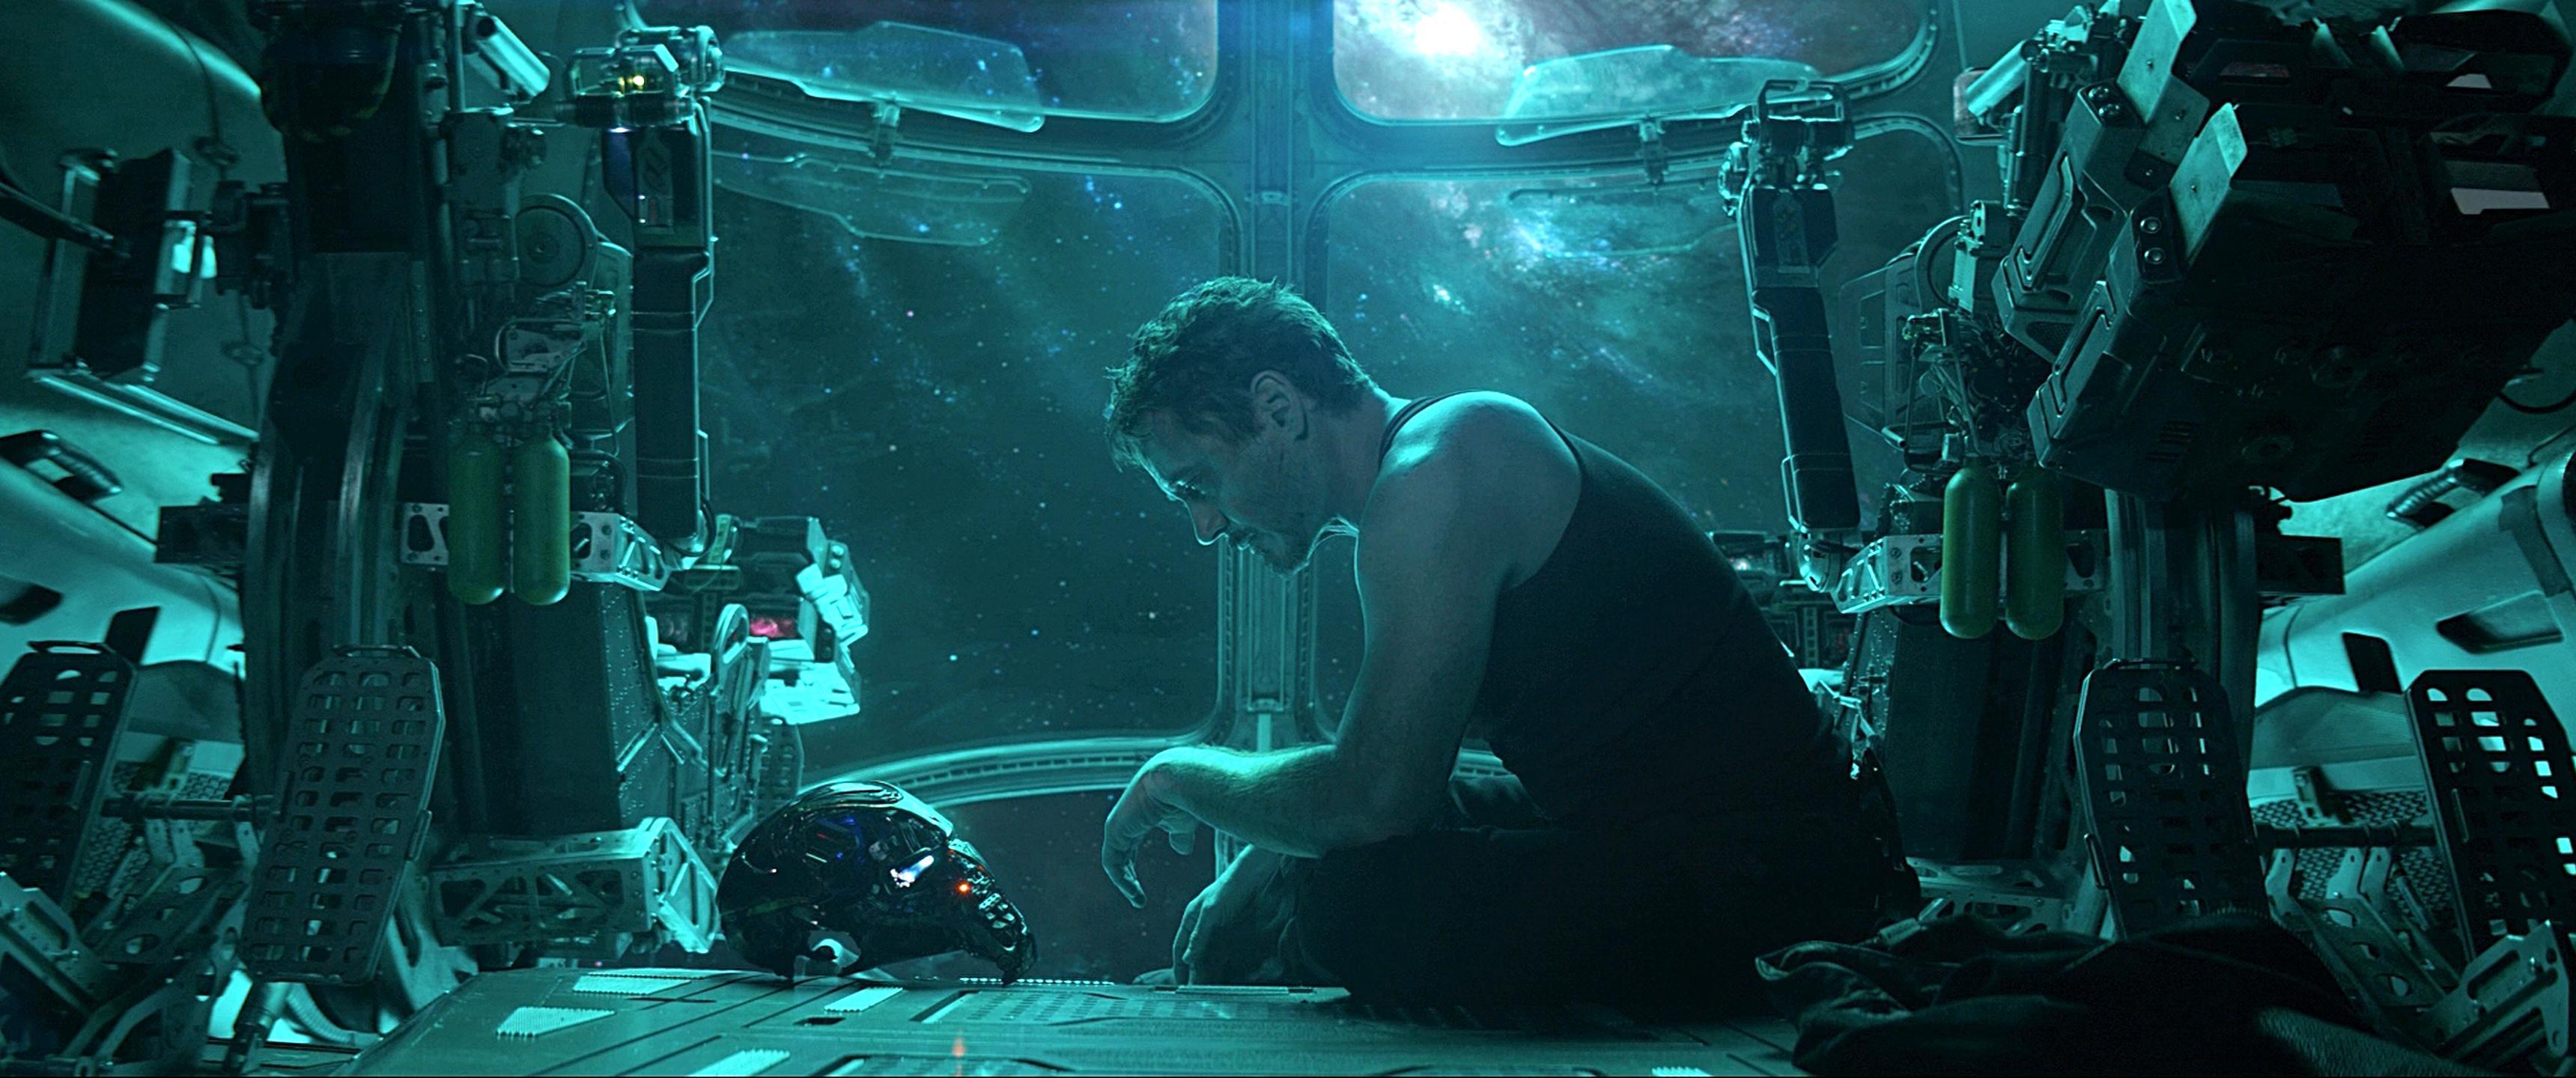 Tony Stark in space (from Avengers: Endgame trailer) 3440x1440